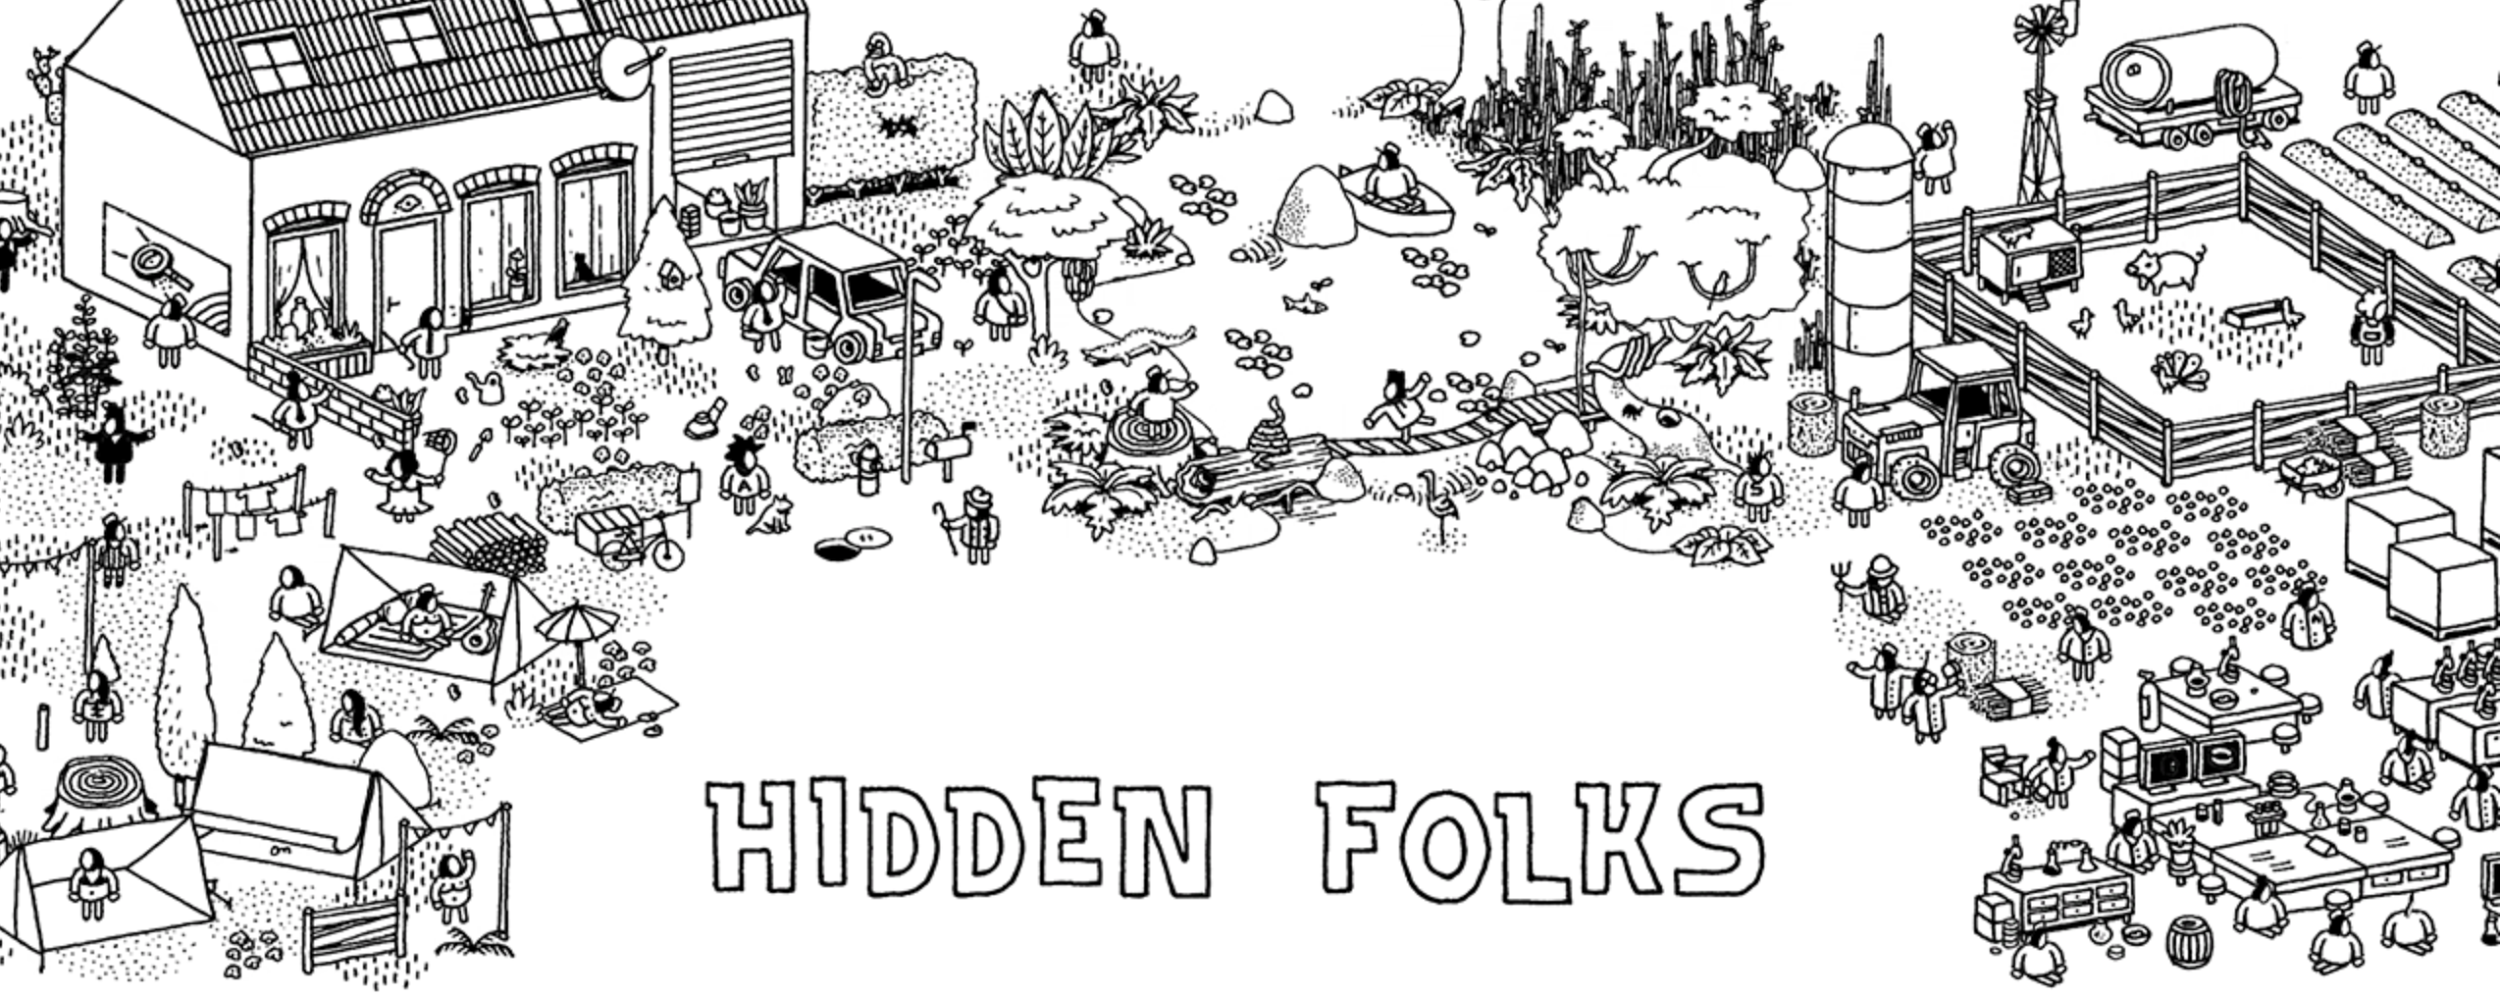 hidden folks